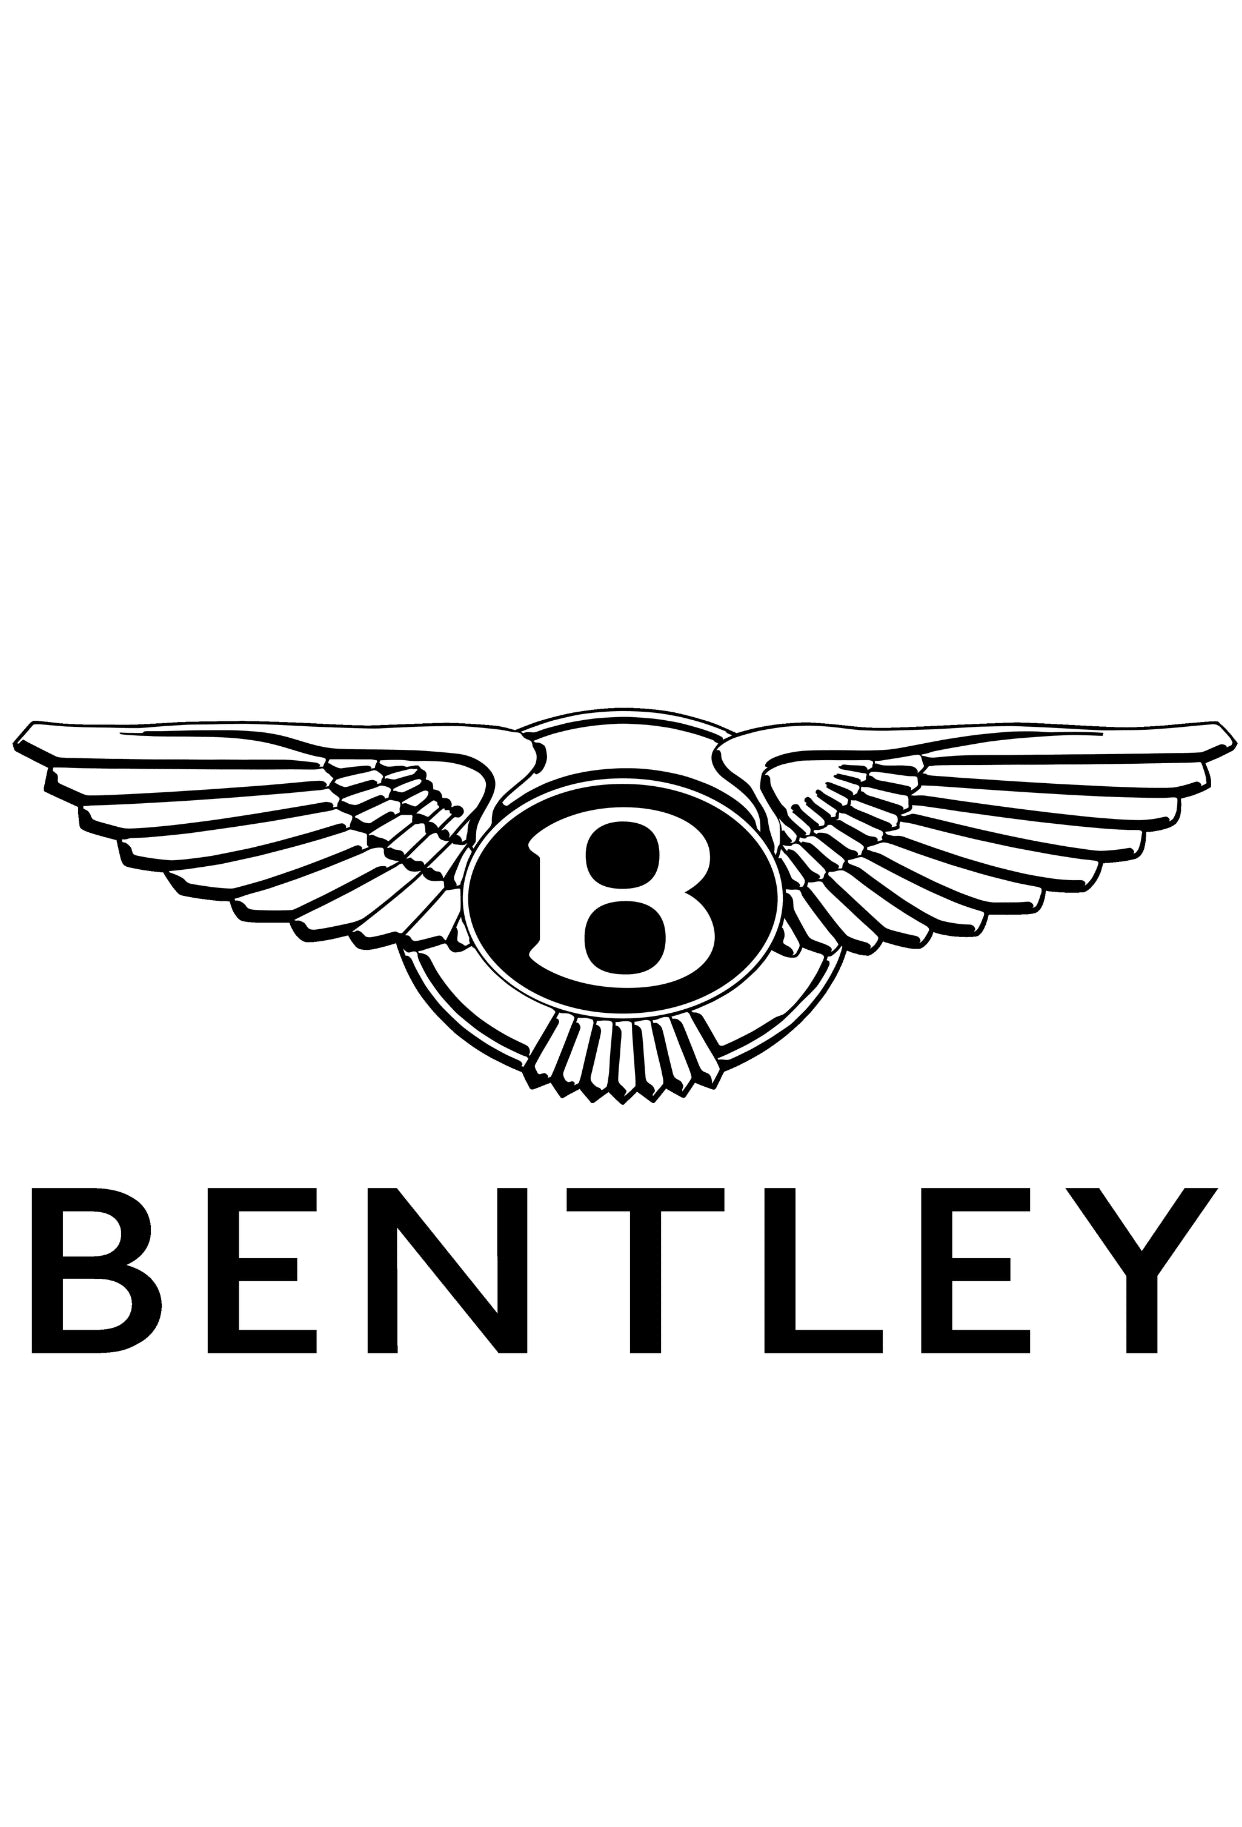 Bentley Continental GT MK3 Luftfahrwerk tieferlegen